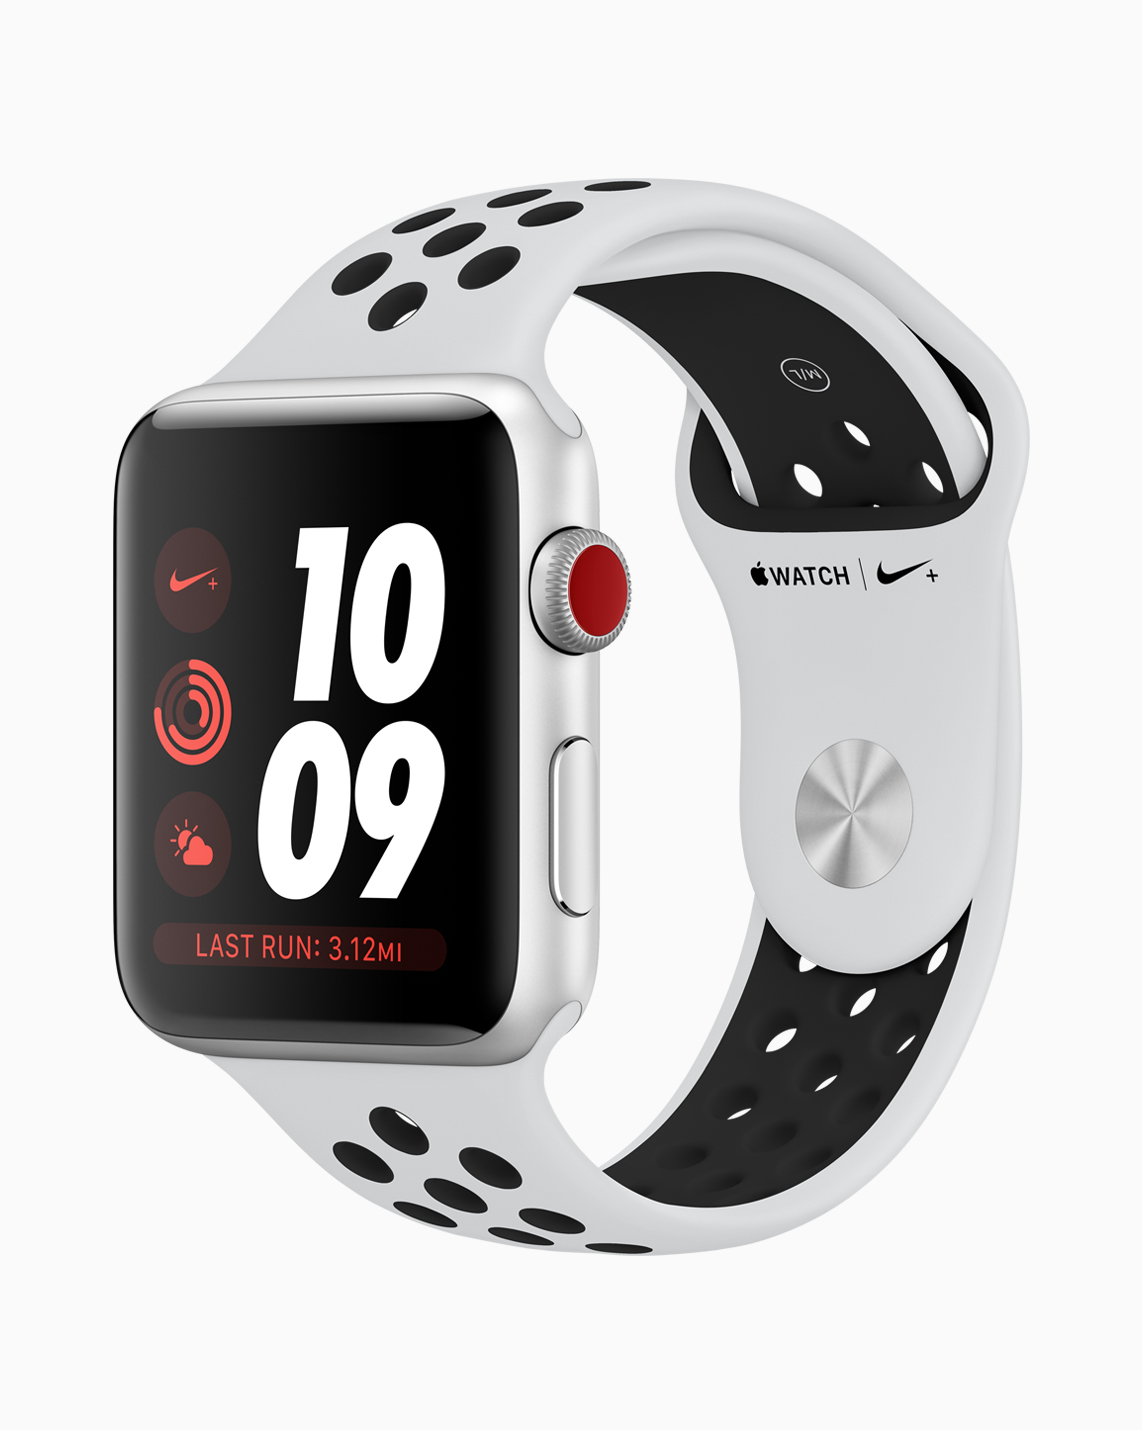 Nike+ Apple Watch Series 3: Is it 